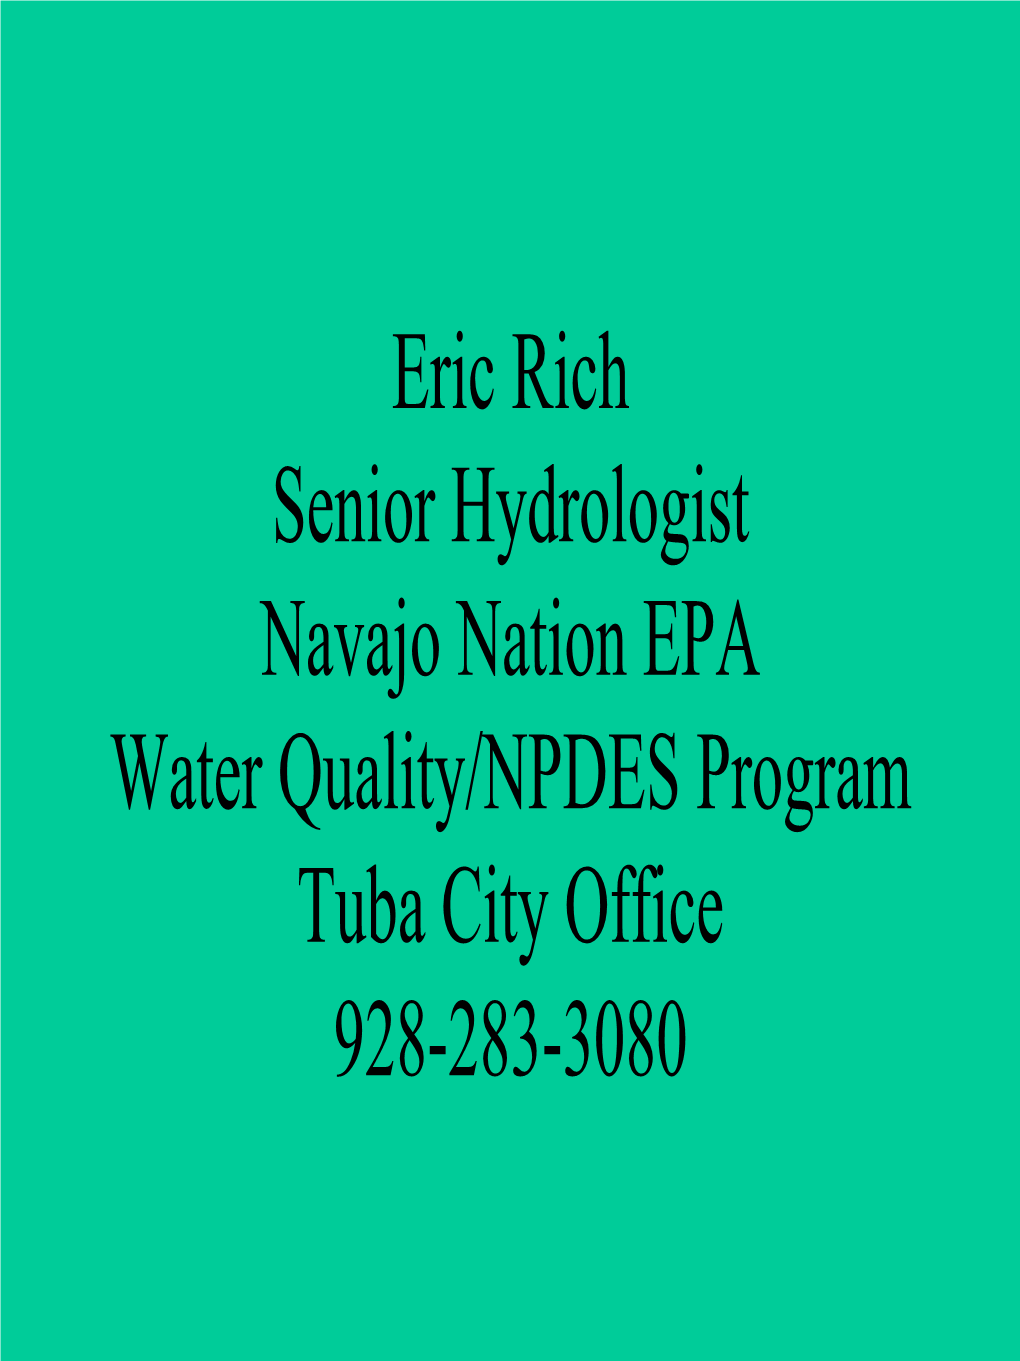 Navajo Nation Environmental Protection Agency